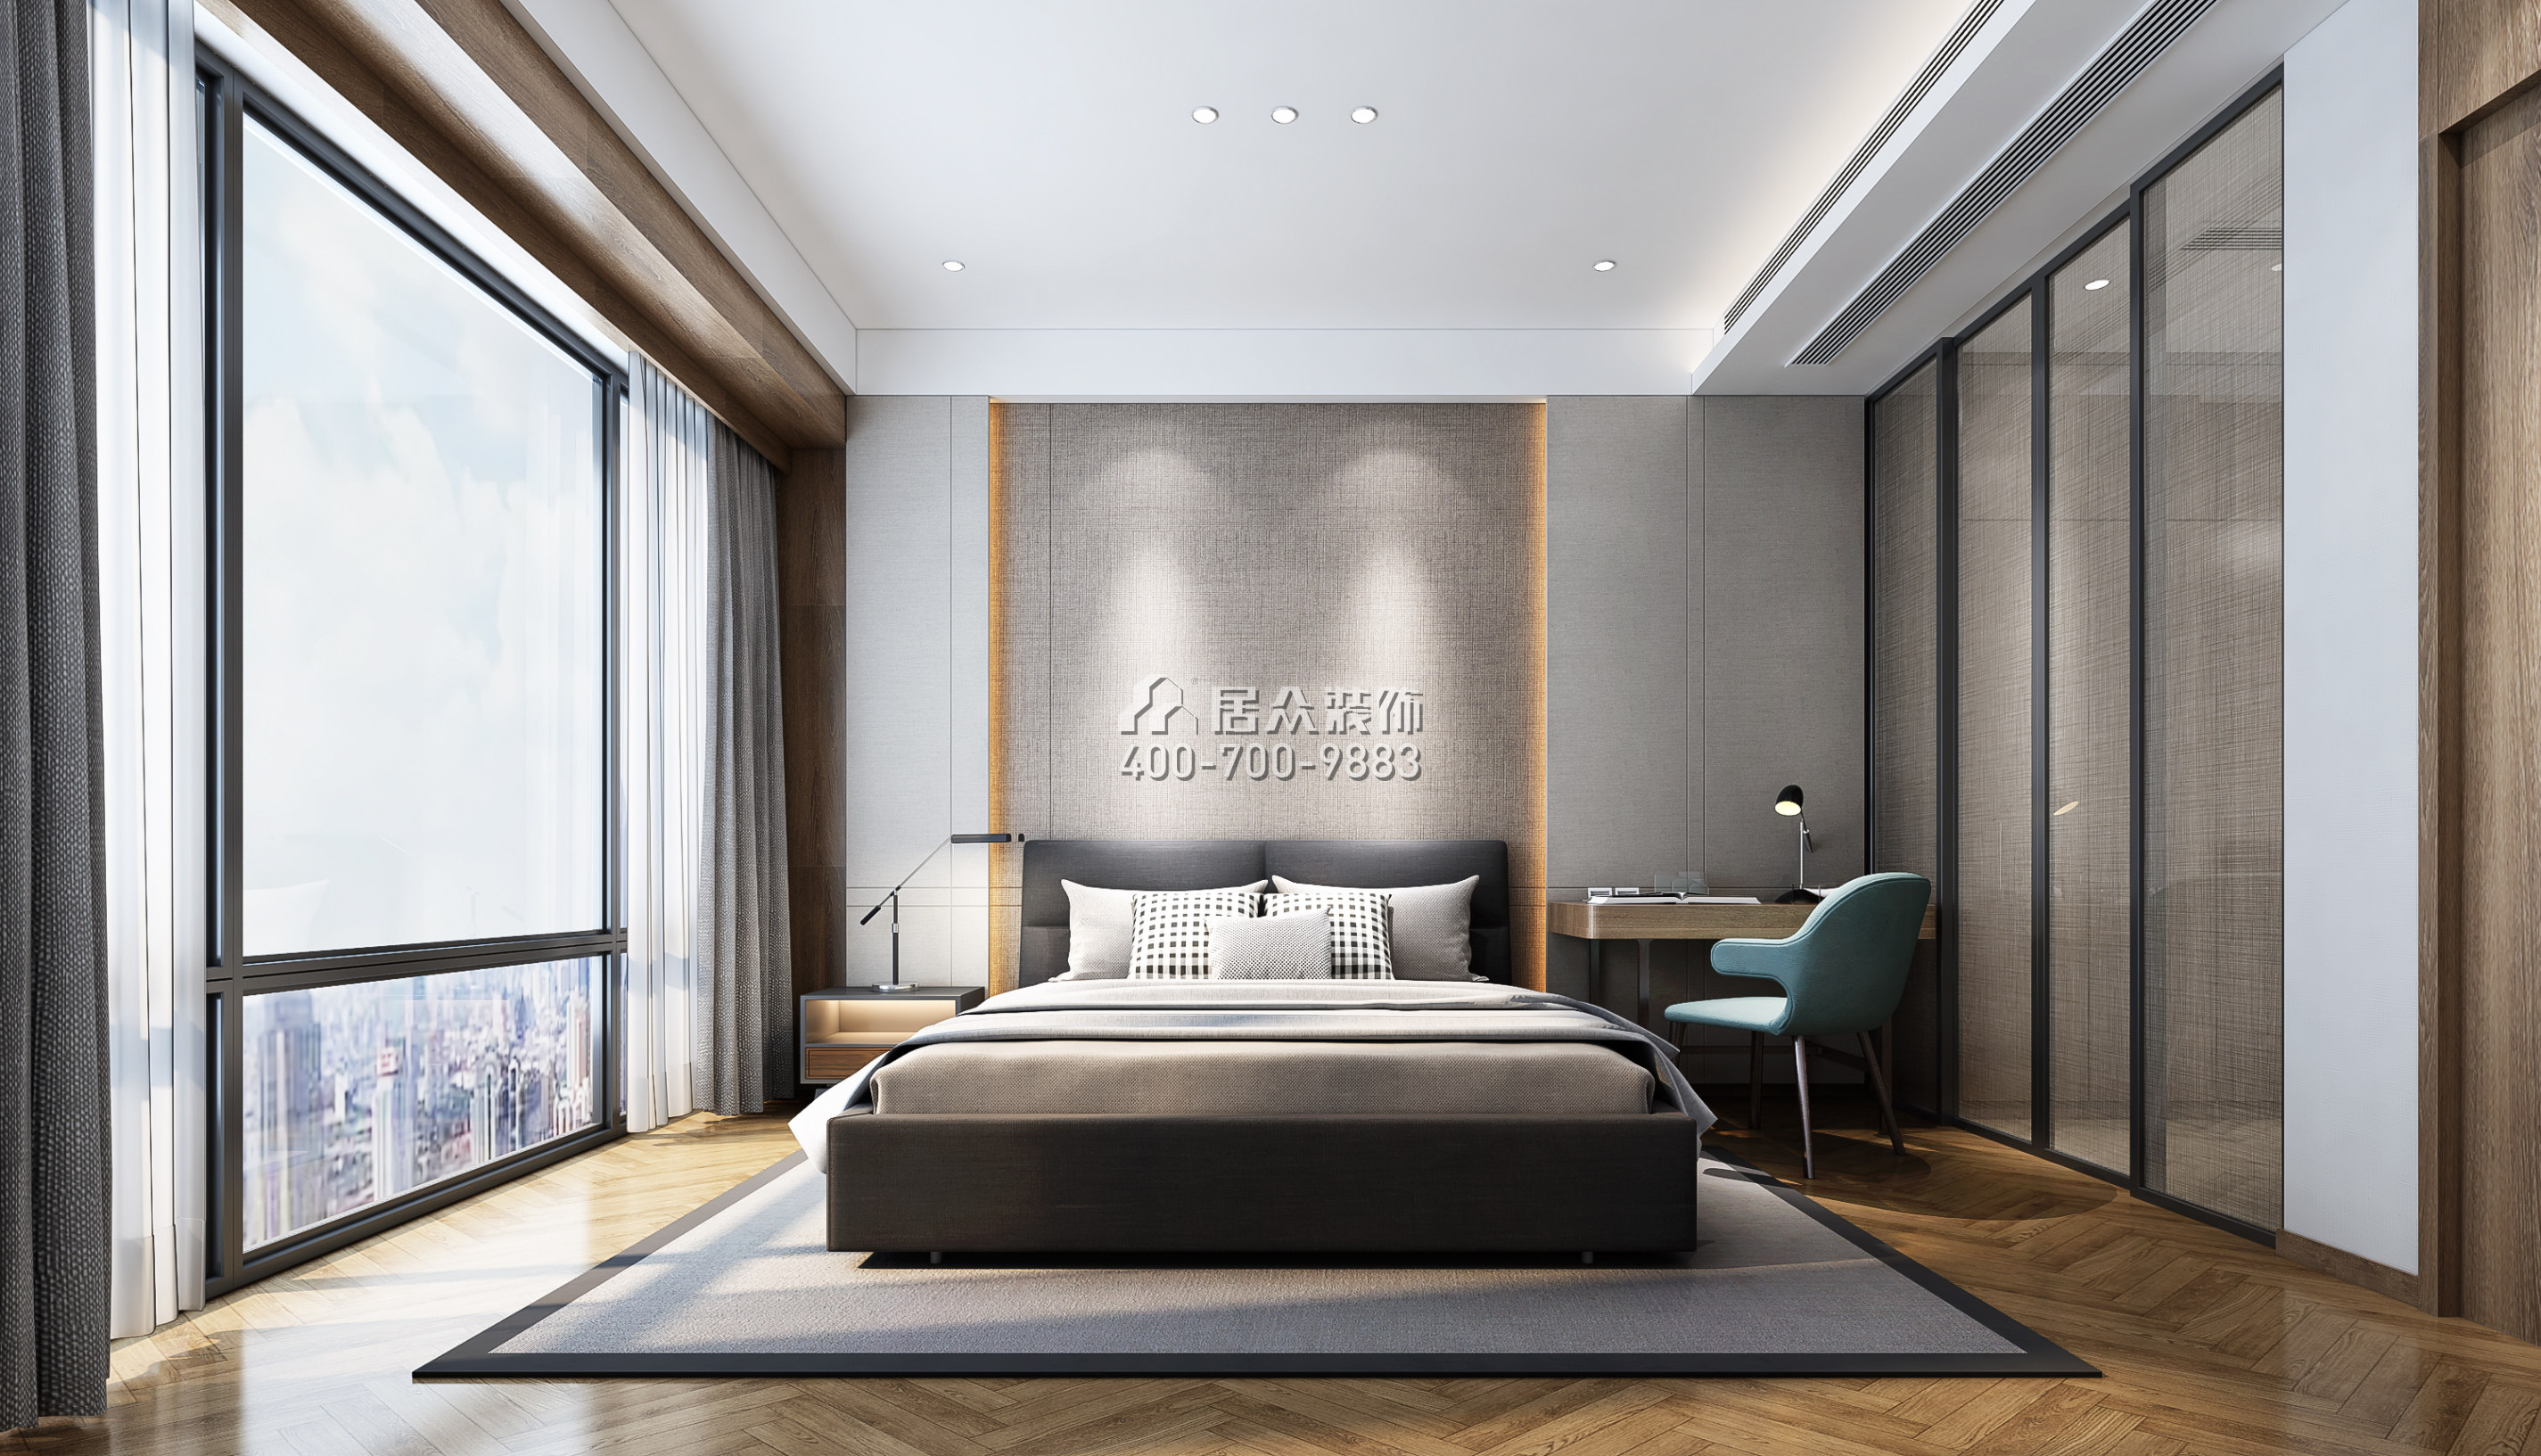 天鹅湖花园二期130平方米现代简约风格平层户型卧室kok电竞平台效果图